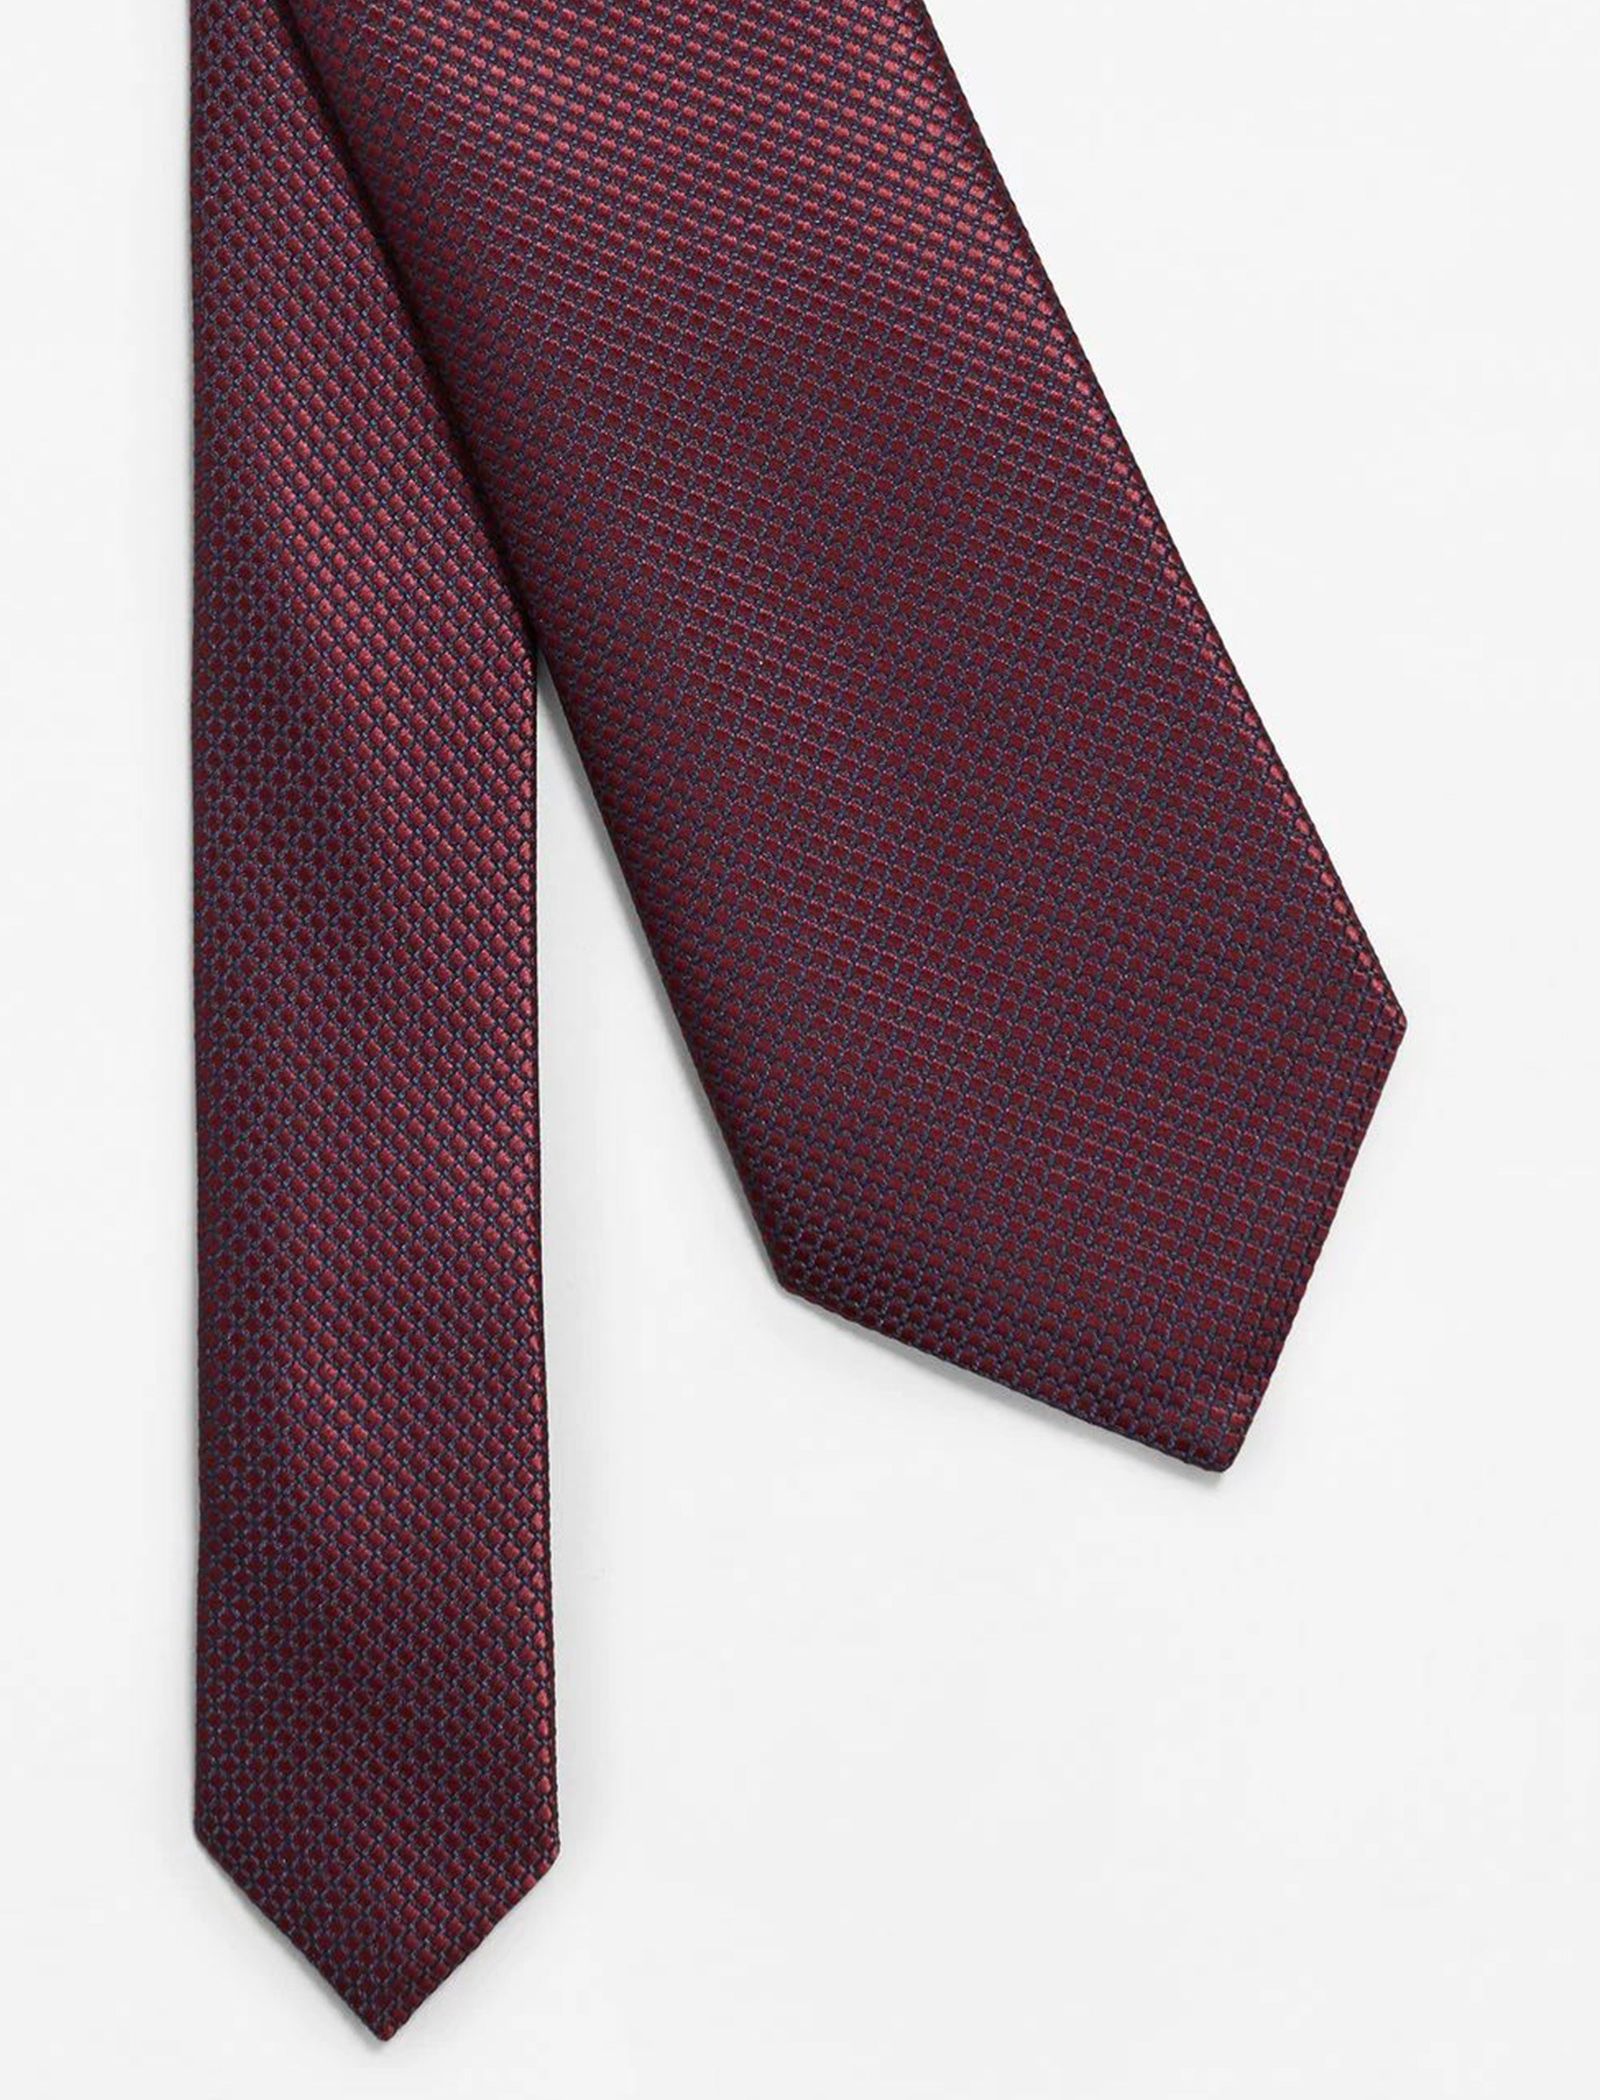 کراوات طرح دار مردانه - مانگو - قرمز - 3